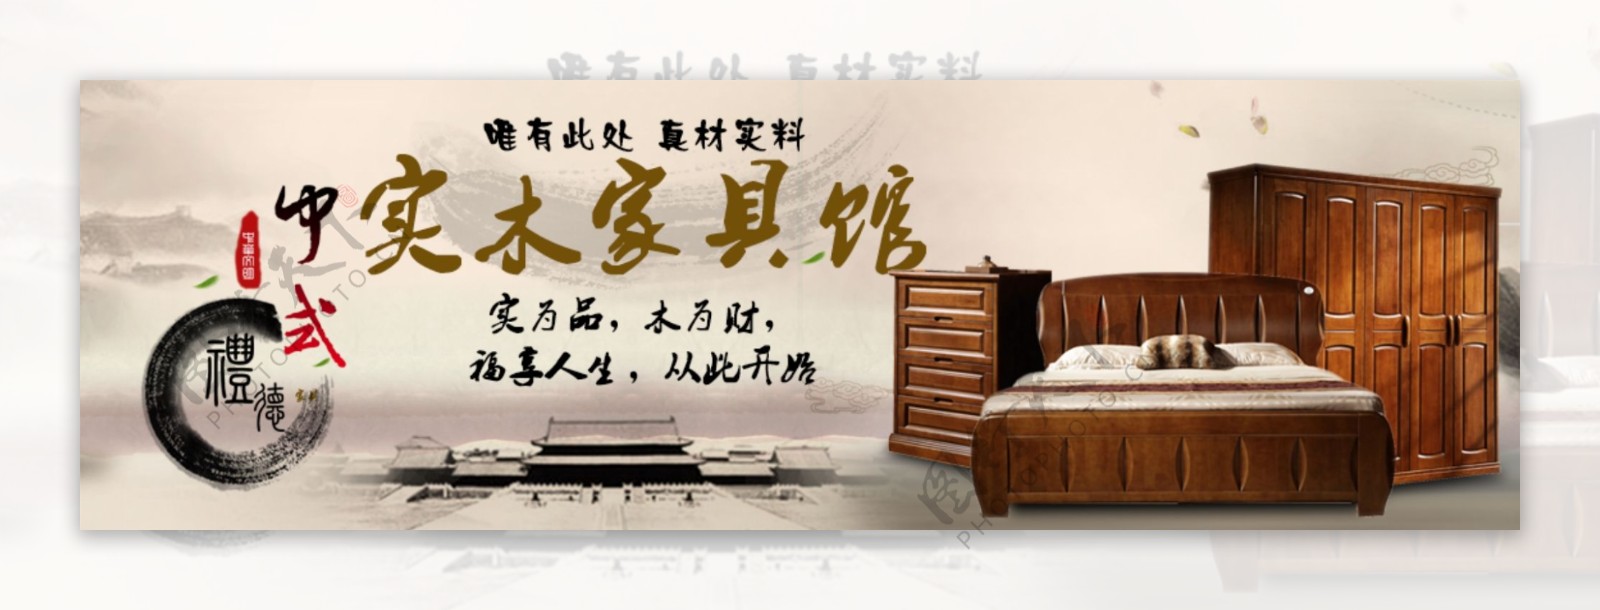 中式家具海报原创设计